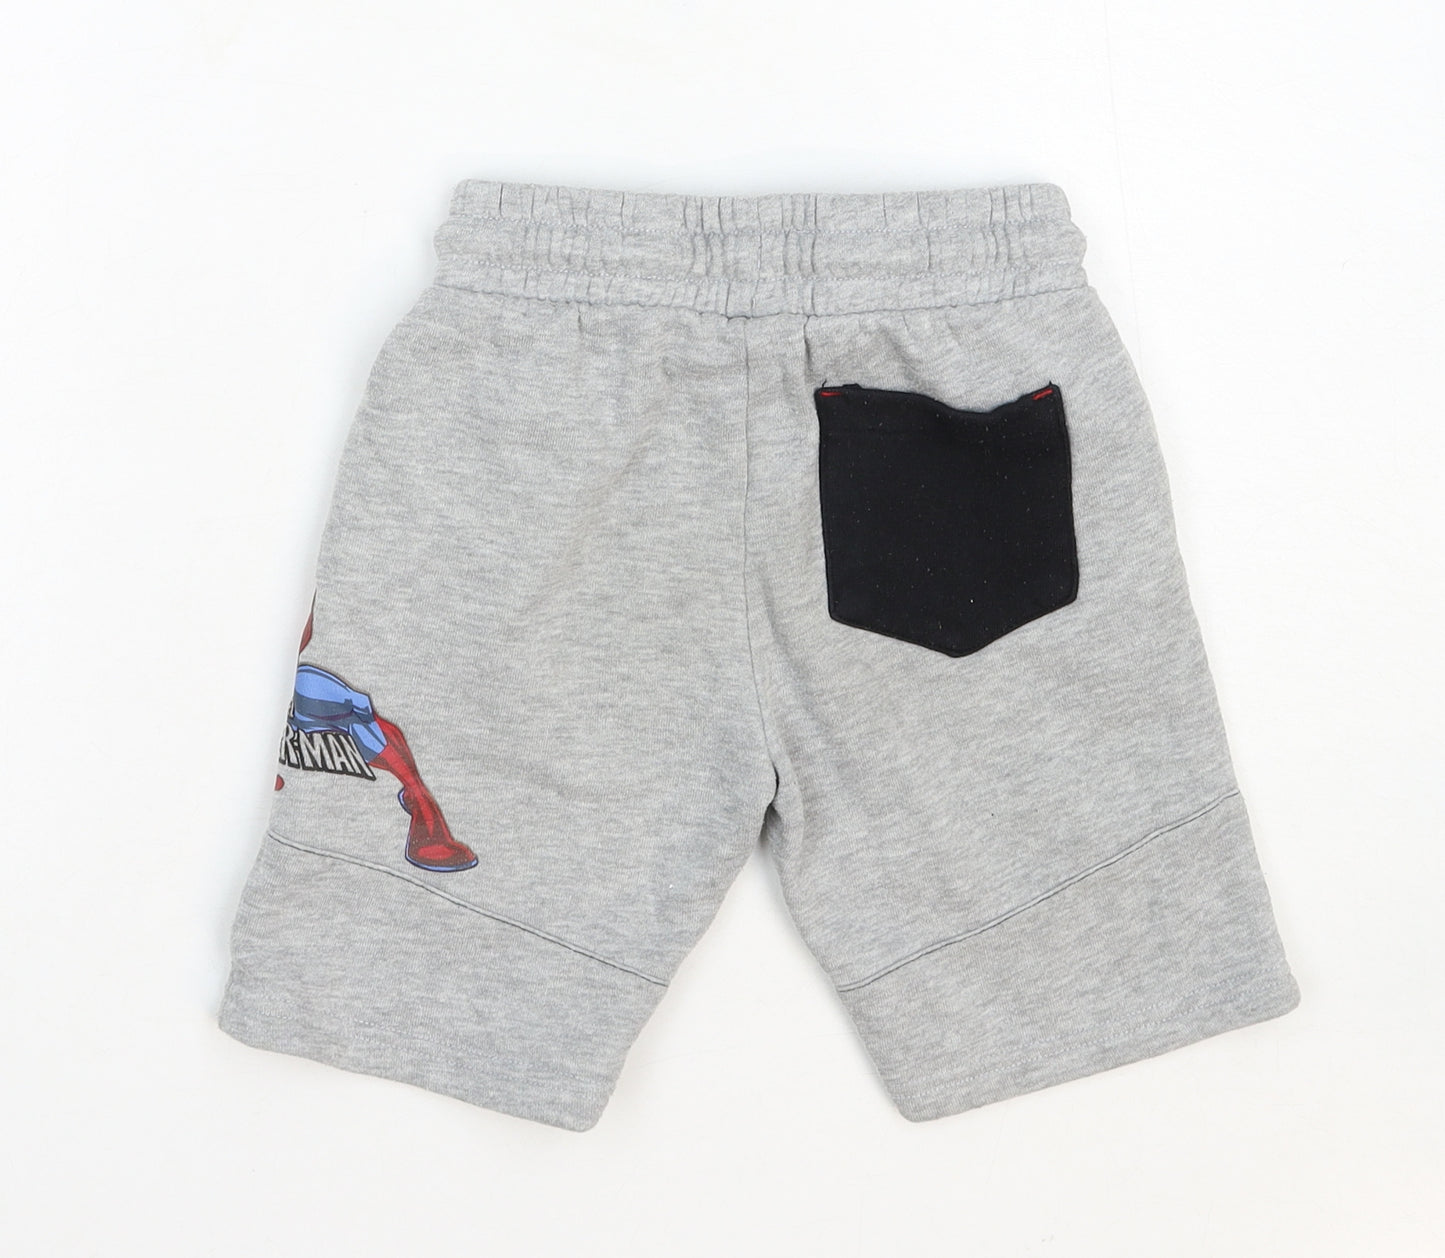 Primark Boys Grey Cotton Sweat Shorts Size 5-6 Years Regular Tie - Spider Man